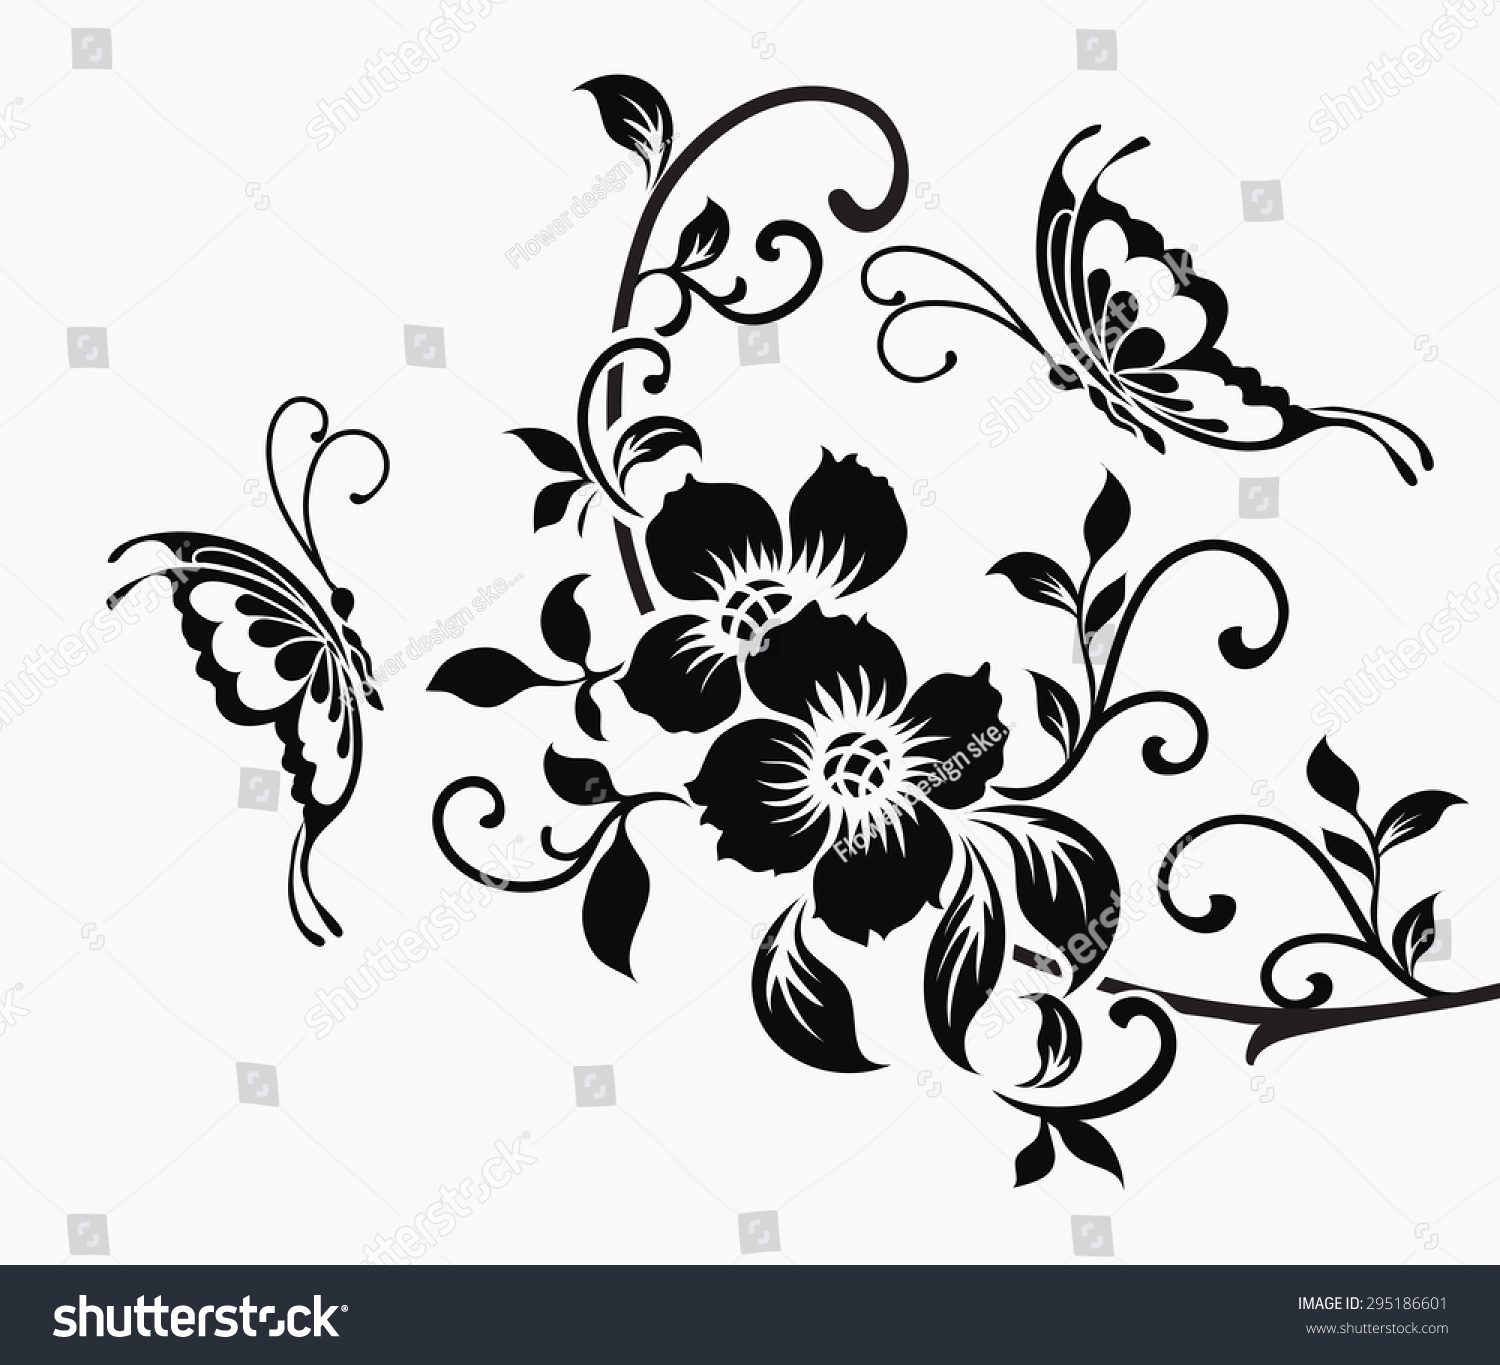 flower motif clip art - photo #40